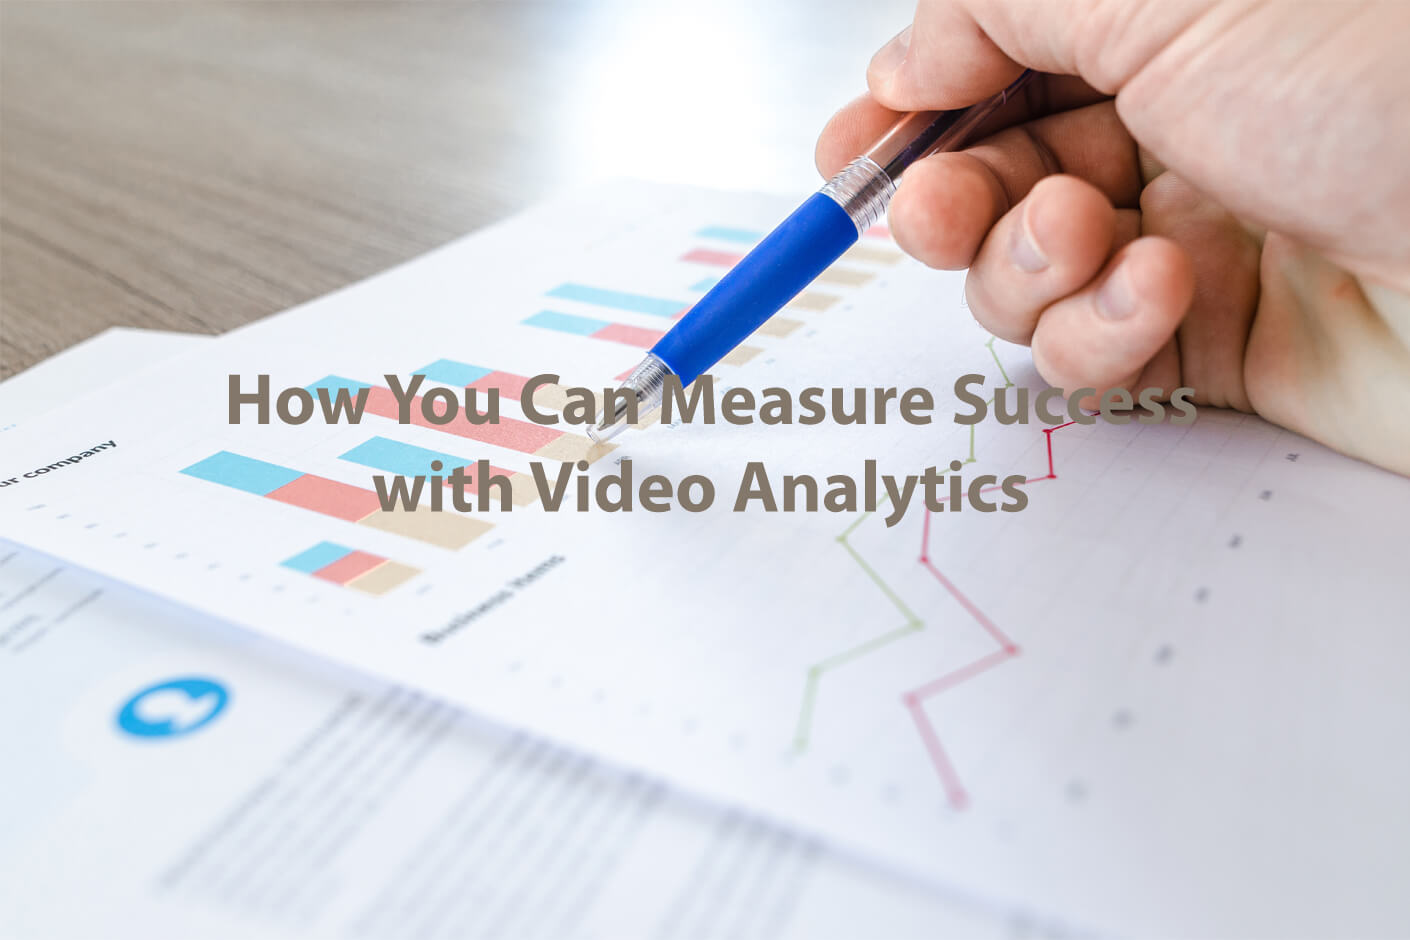 Video Analytics